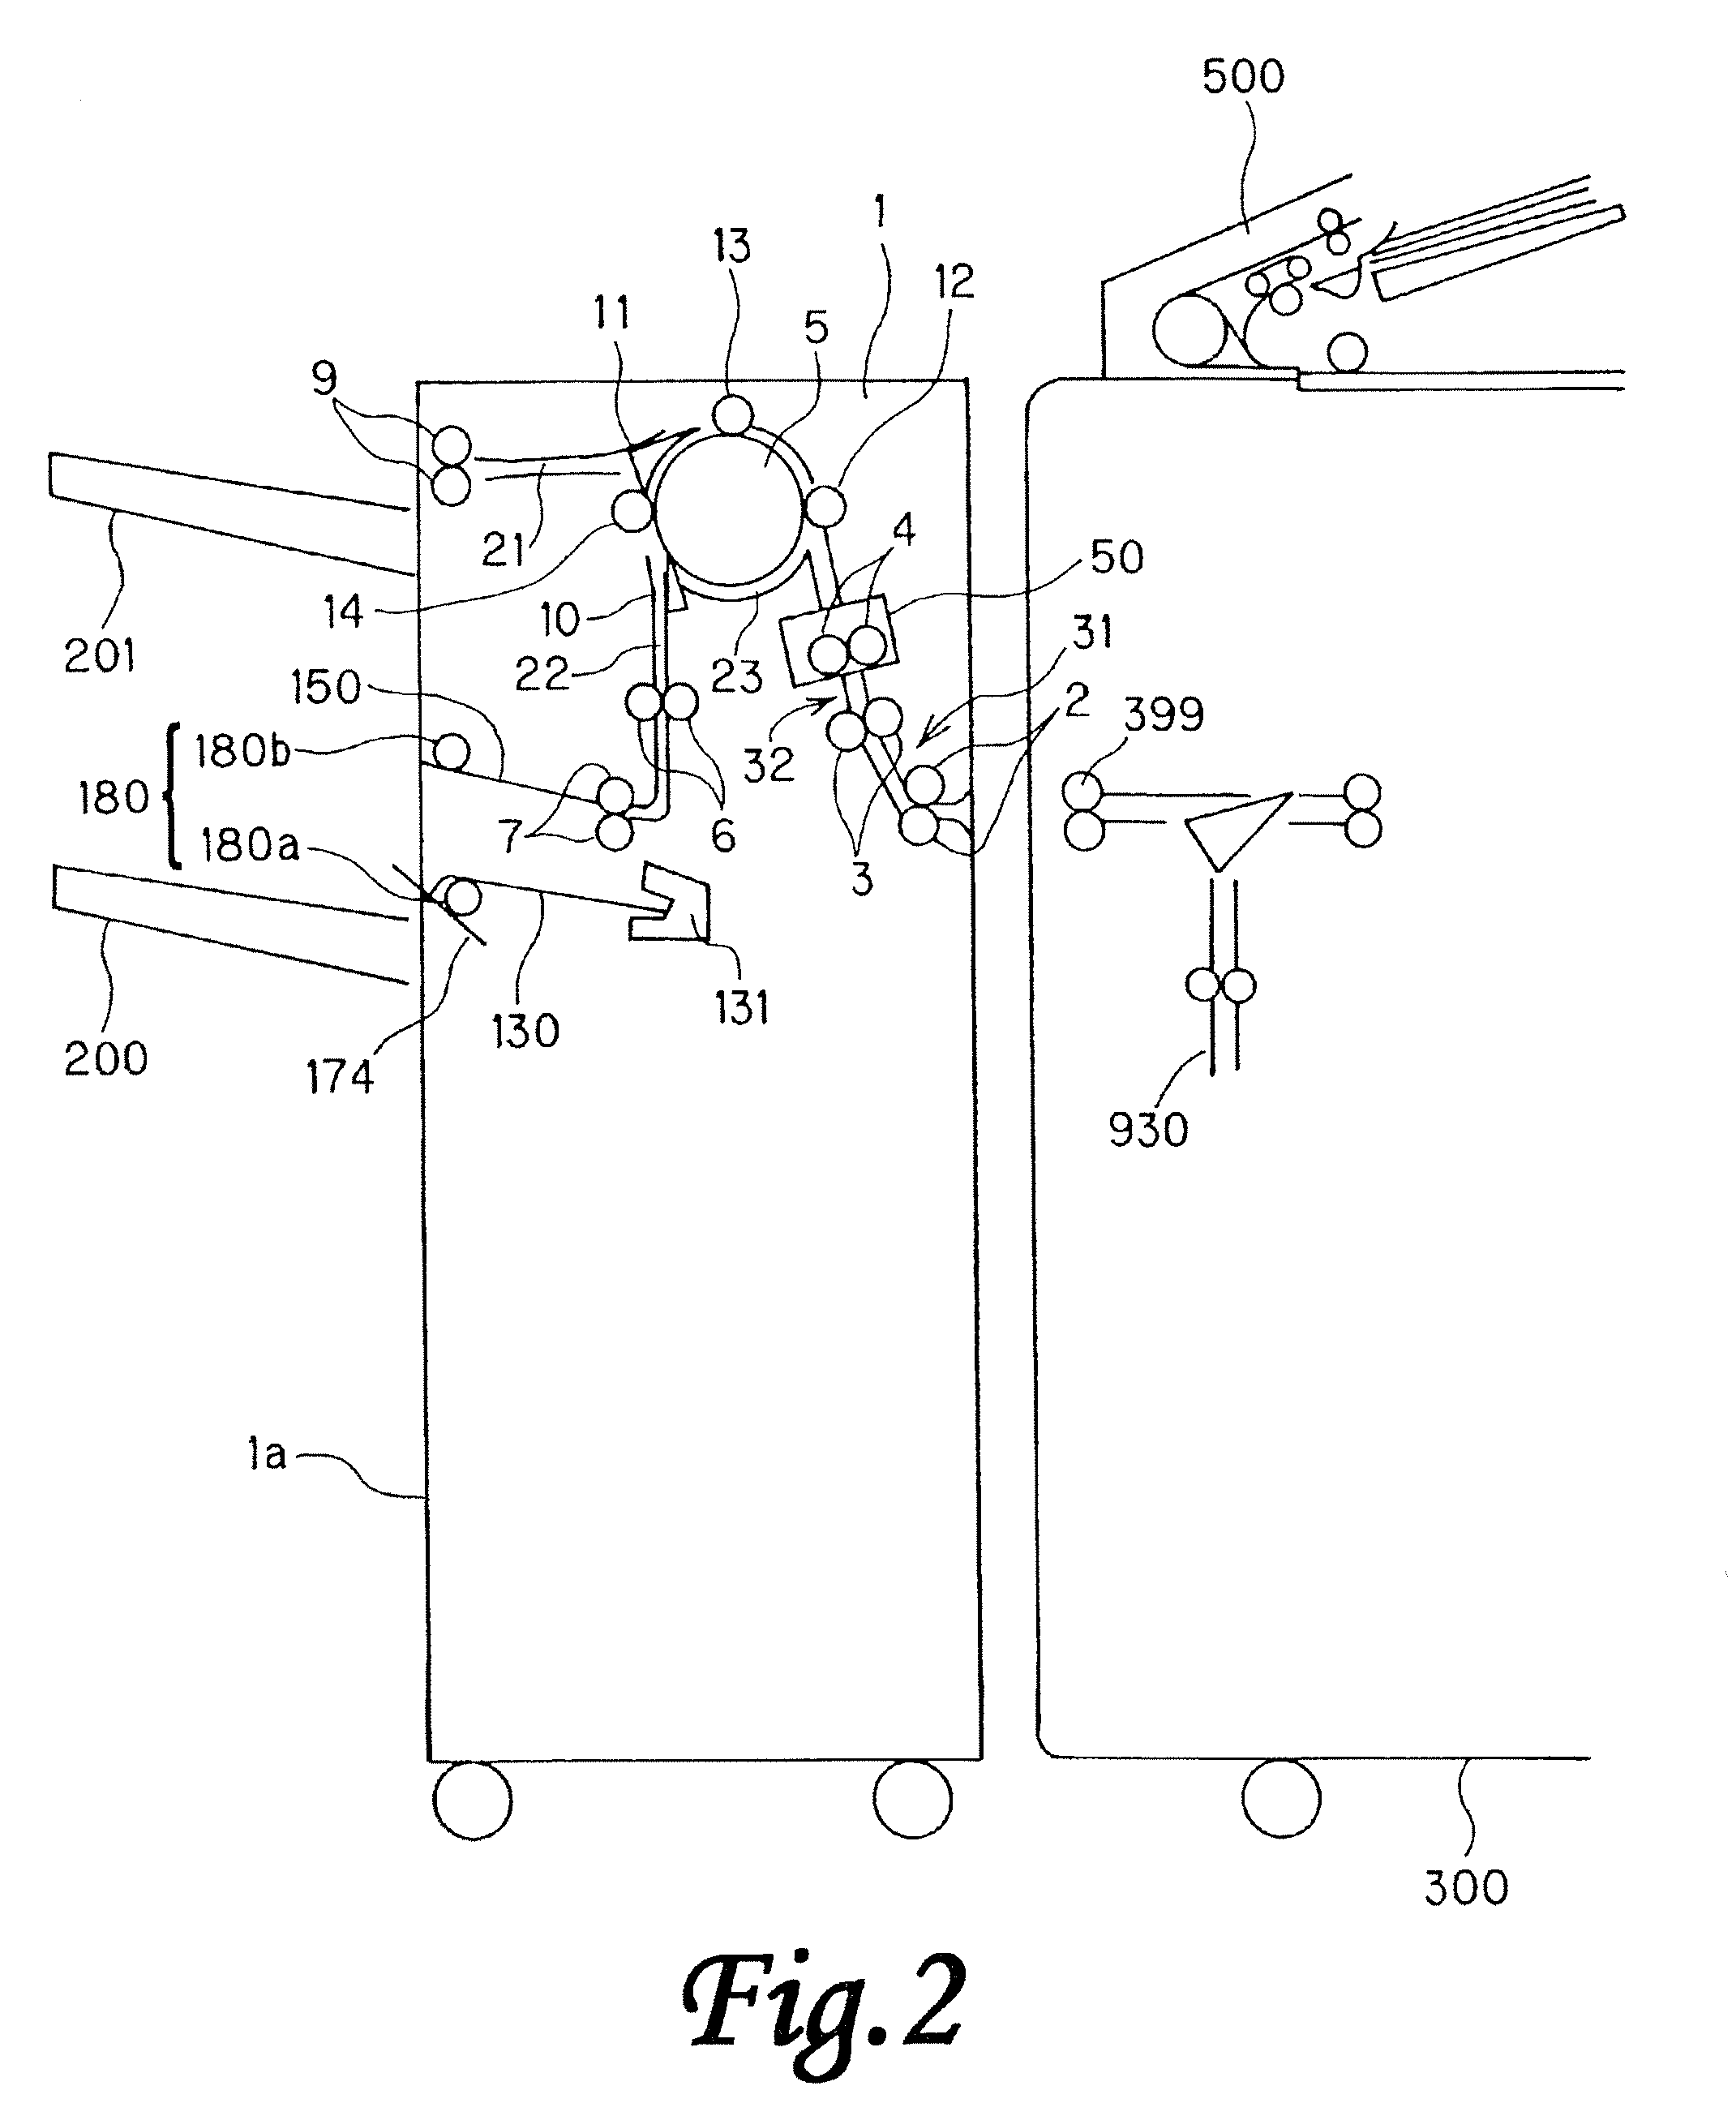 Sheet stacking apparatus, sheet processing apparatus and image forming apparatus